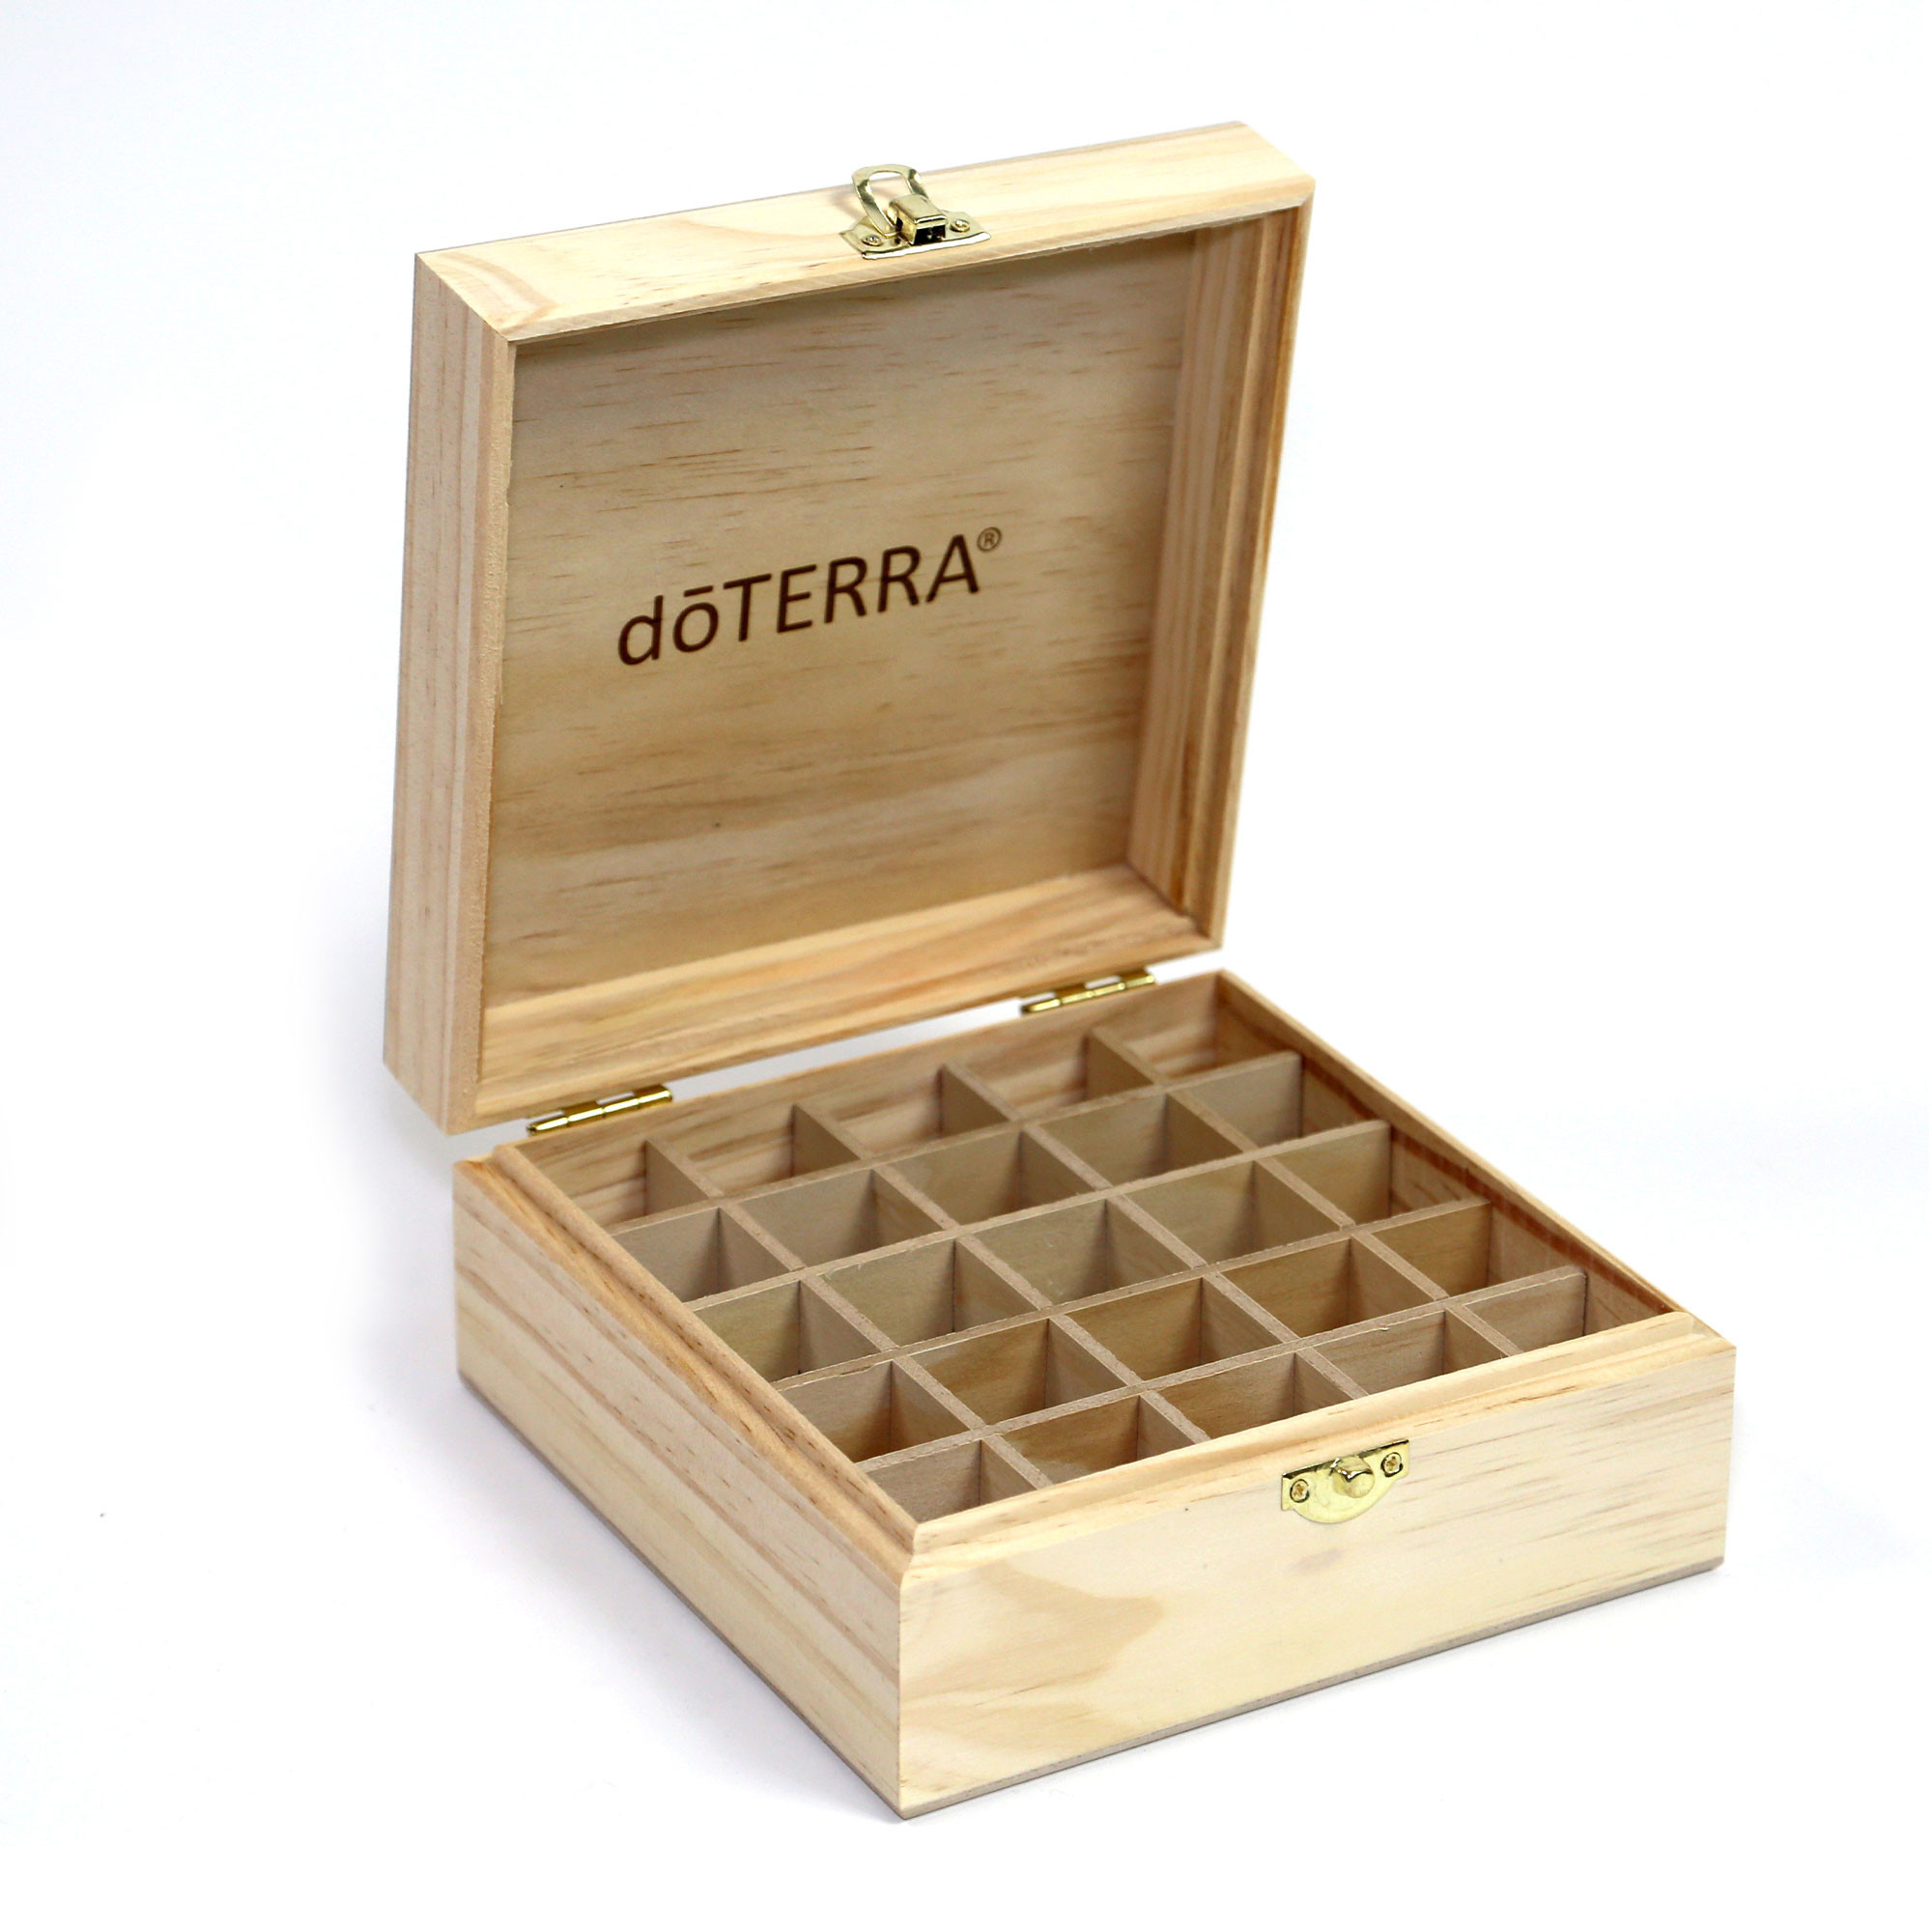 DoTERRA Logo Engraved Wooden Box - Деревянная шкатулка дотерра для хранения масел